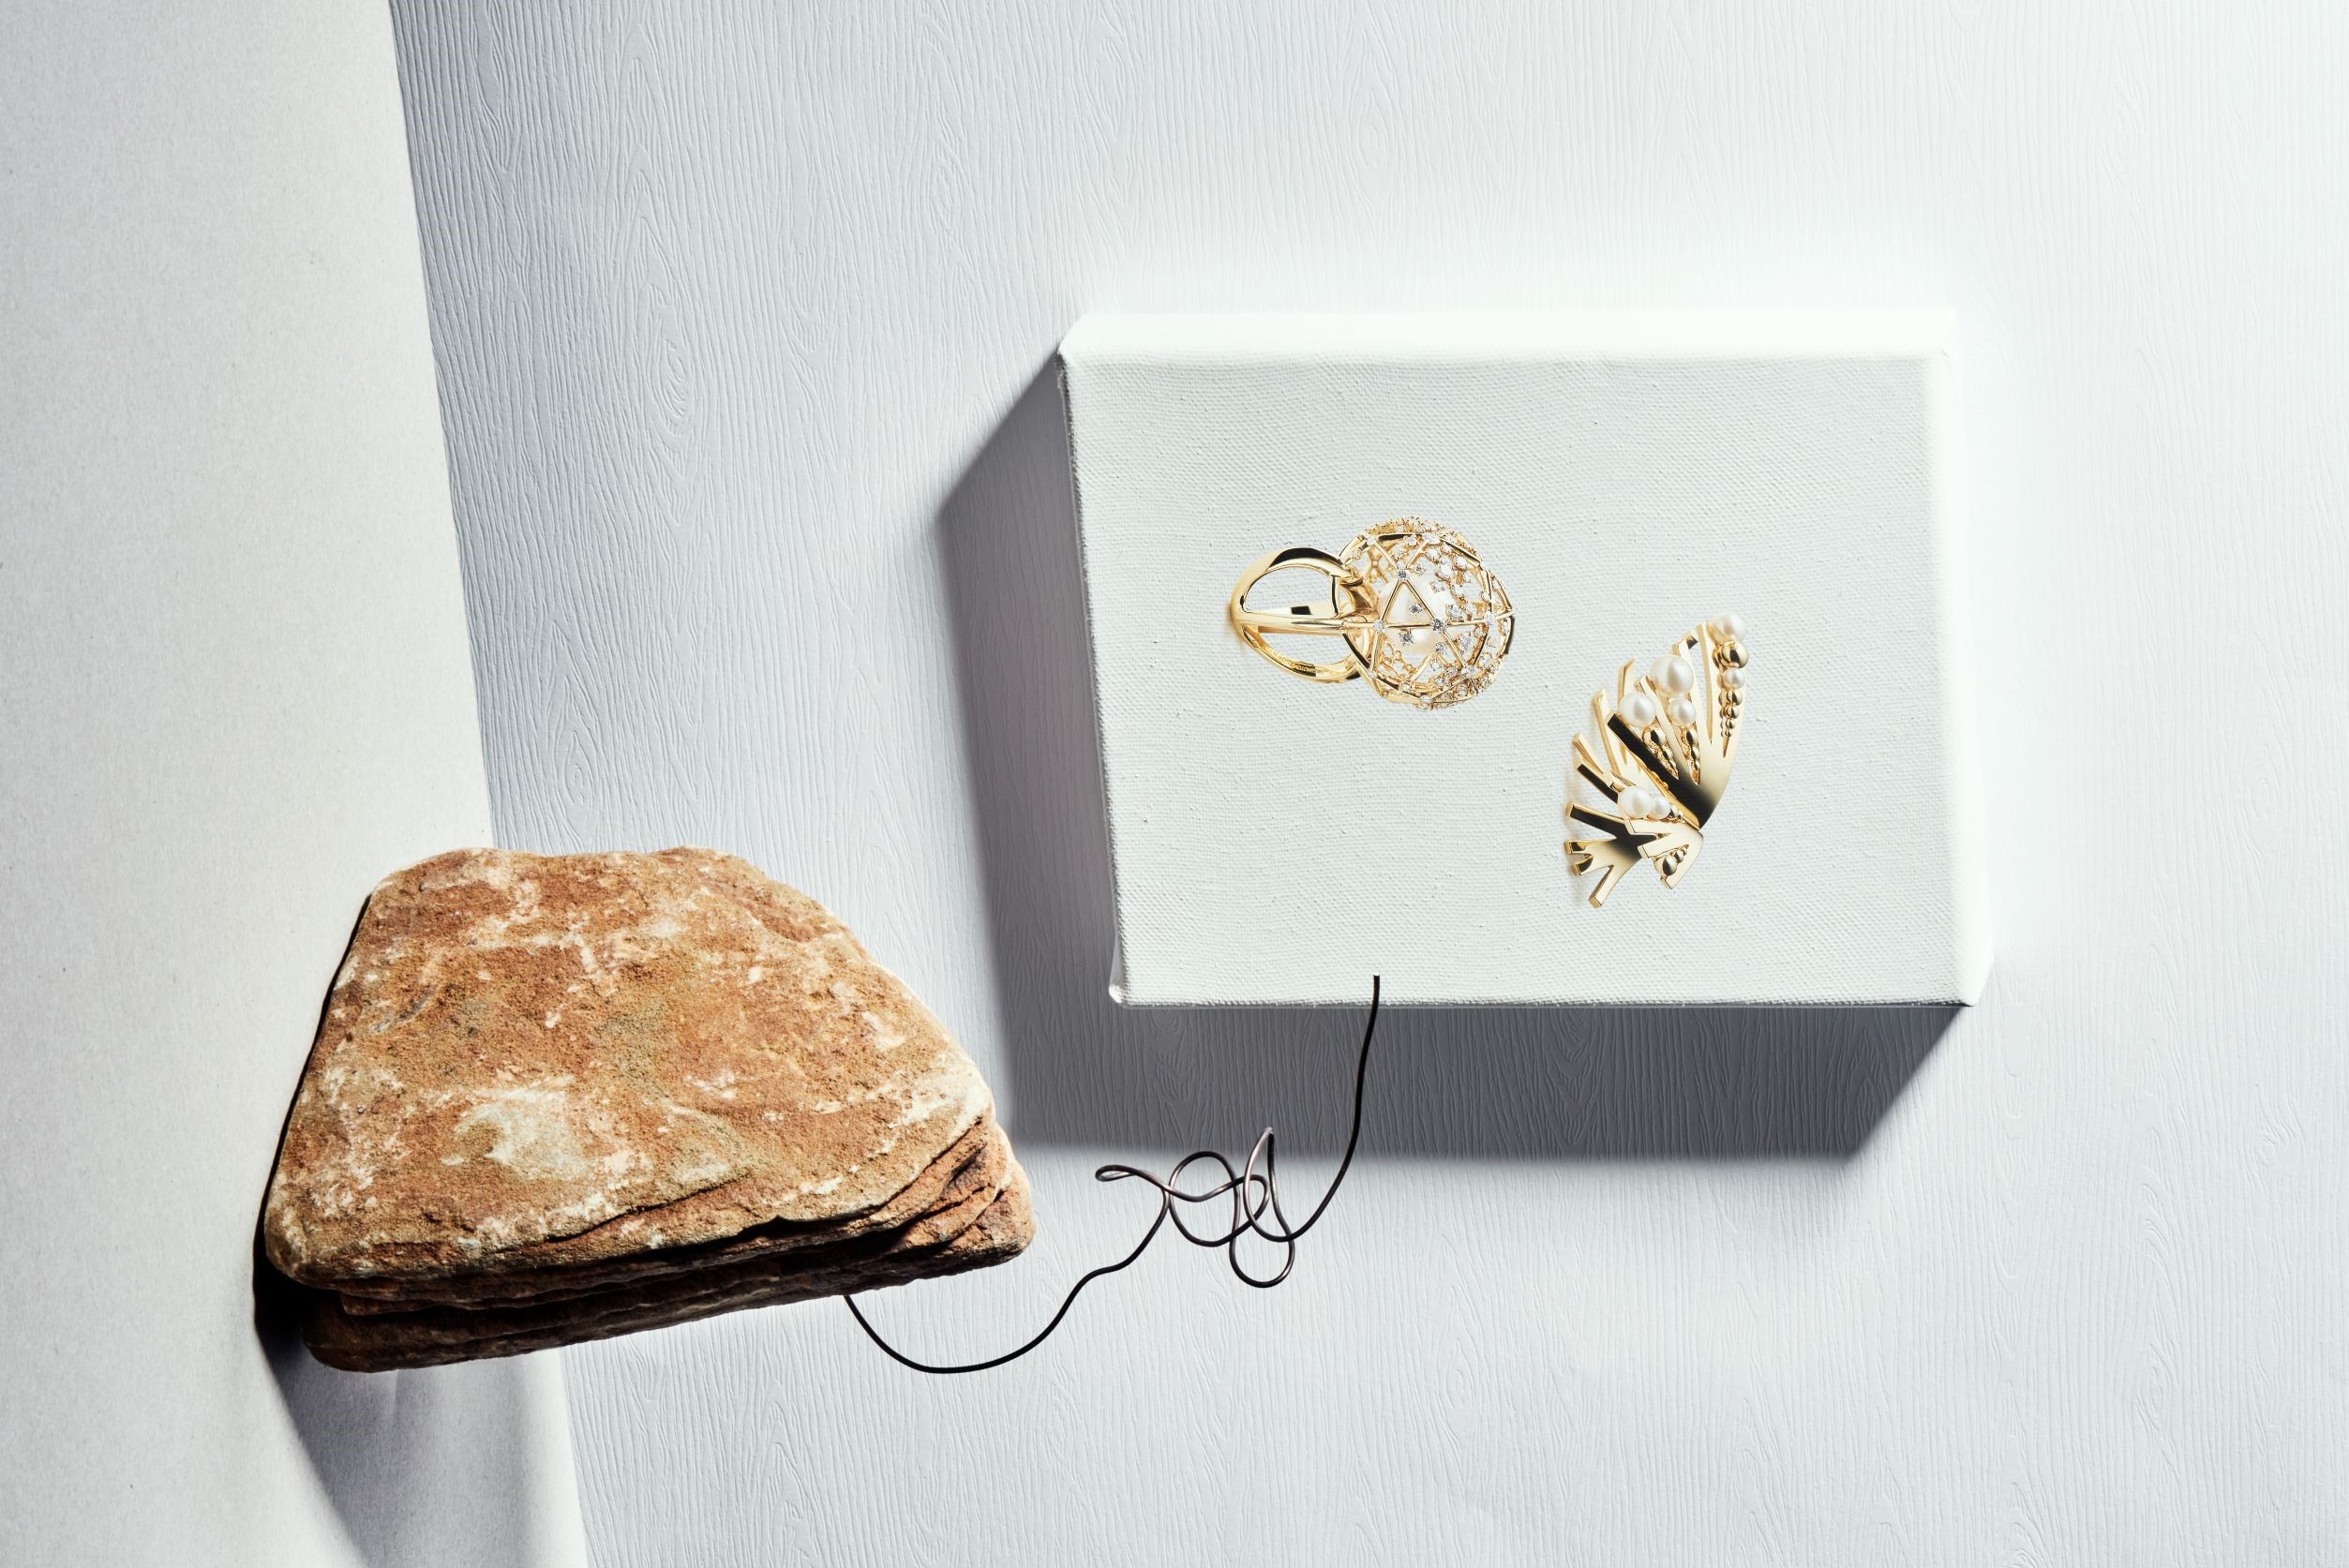 左：A World of Creativity 系列戒指，18K 黃金、南洋珍珠、鑽石／Mikimoto。右：M/G Tasaki Grain 指間戒，黃 K 金、珍珠／Tasaki。